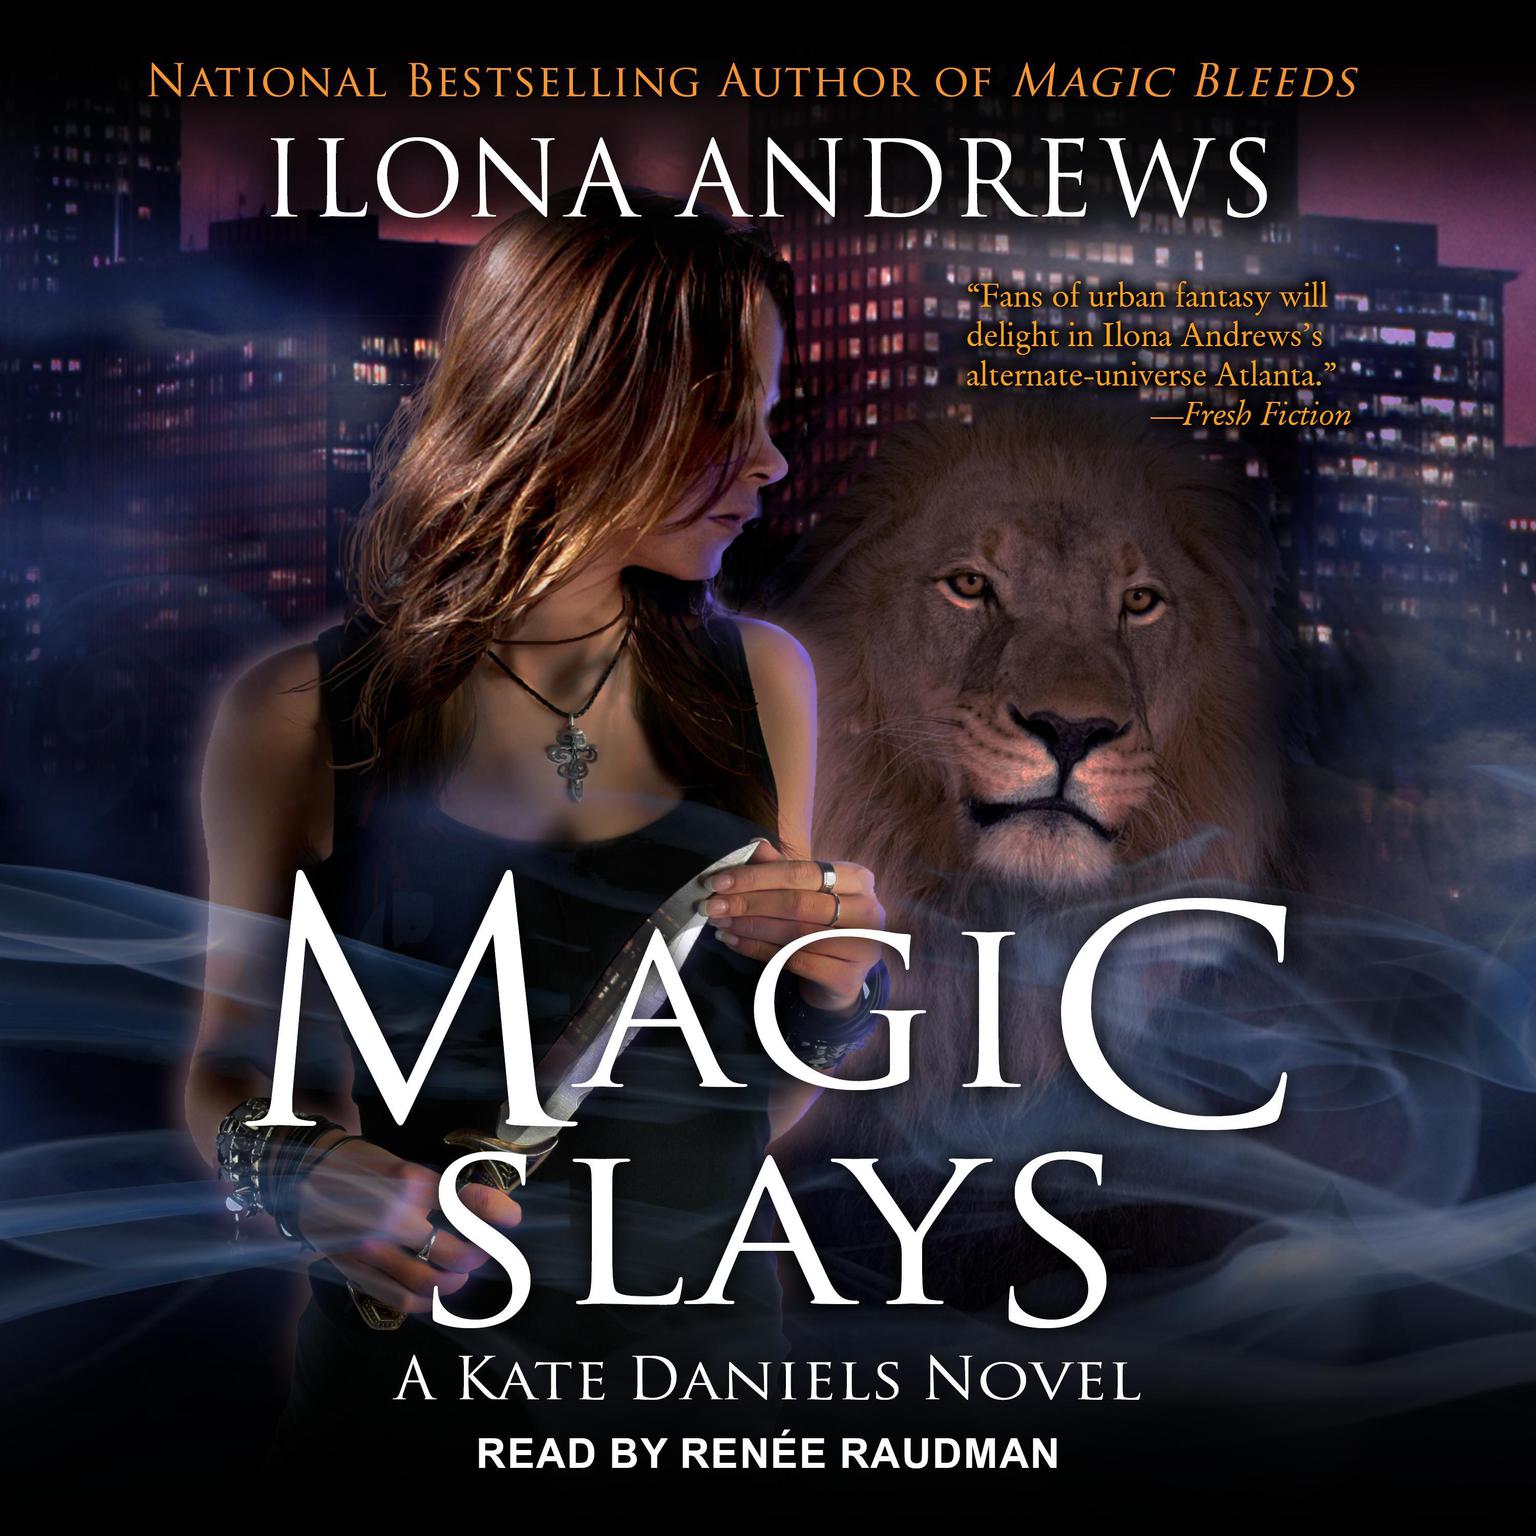 Magic Slays Audiobook by Ilona Andrews — Listen Now